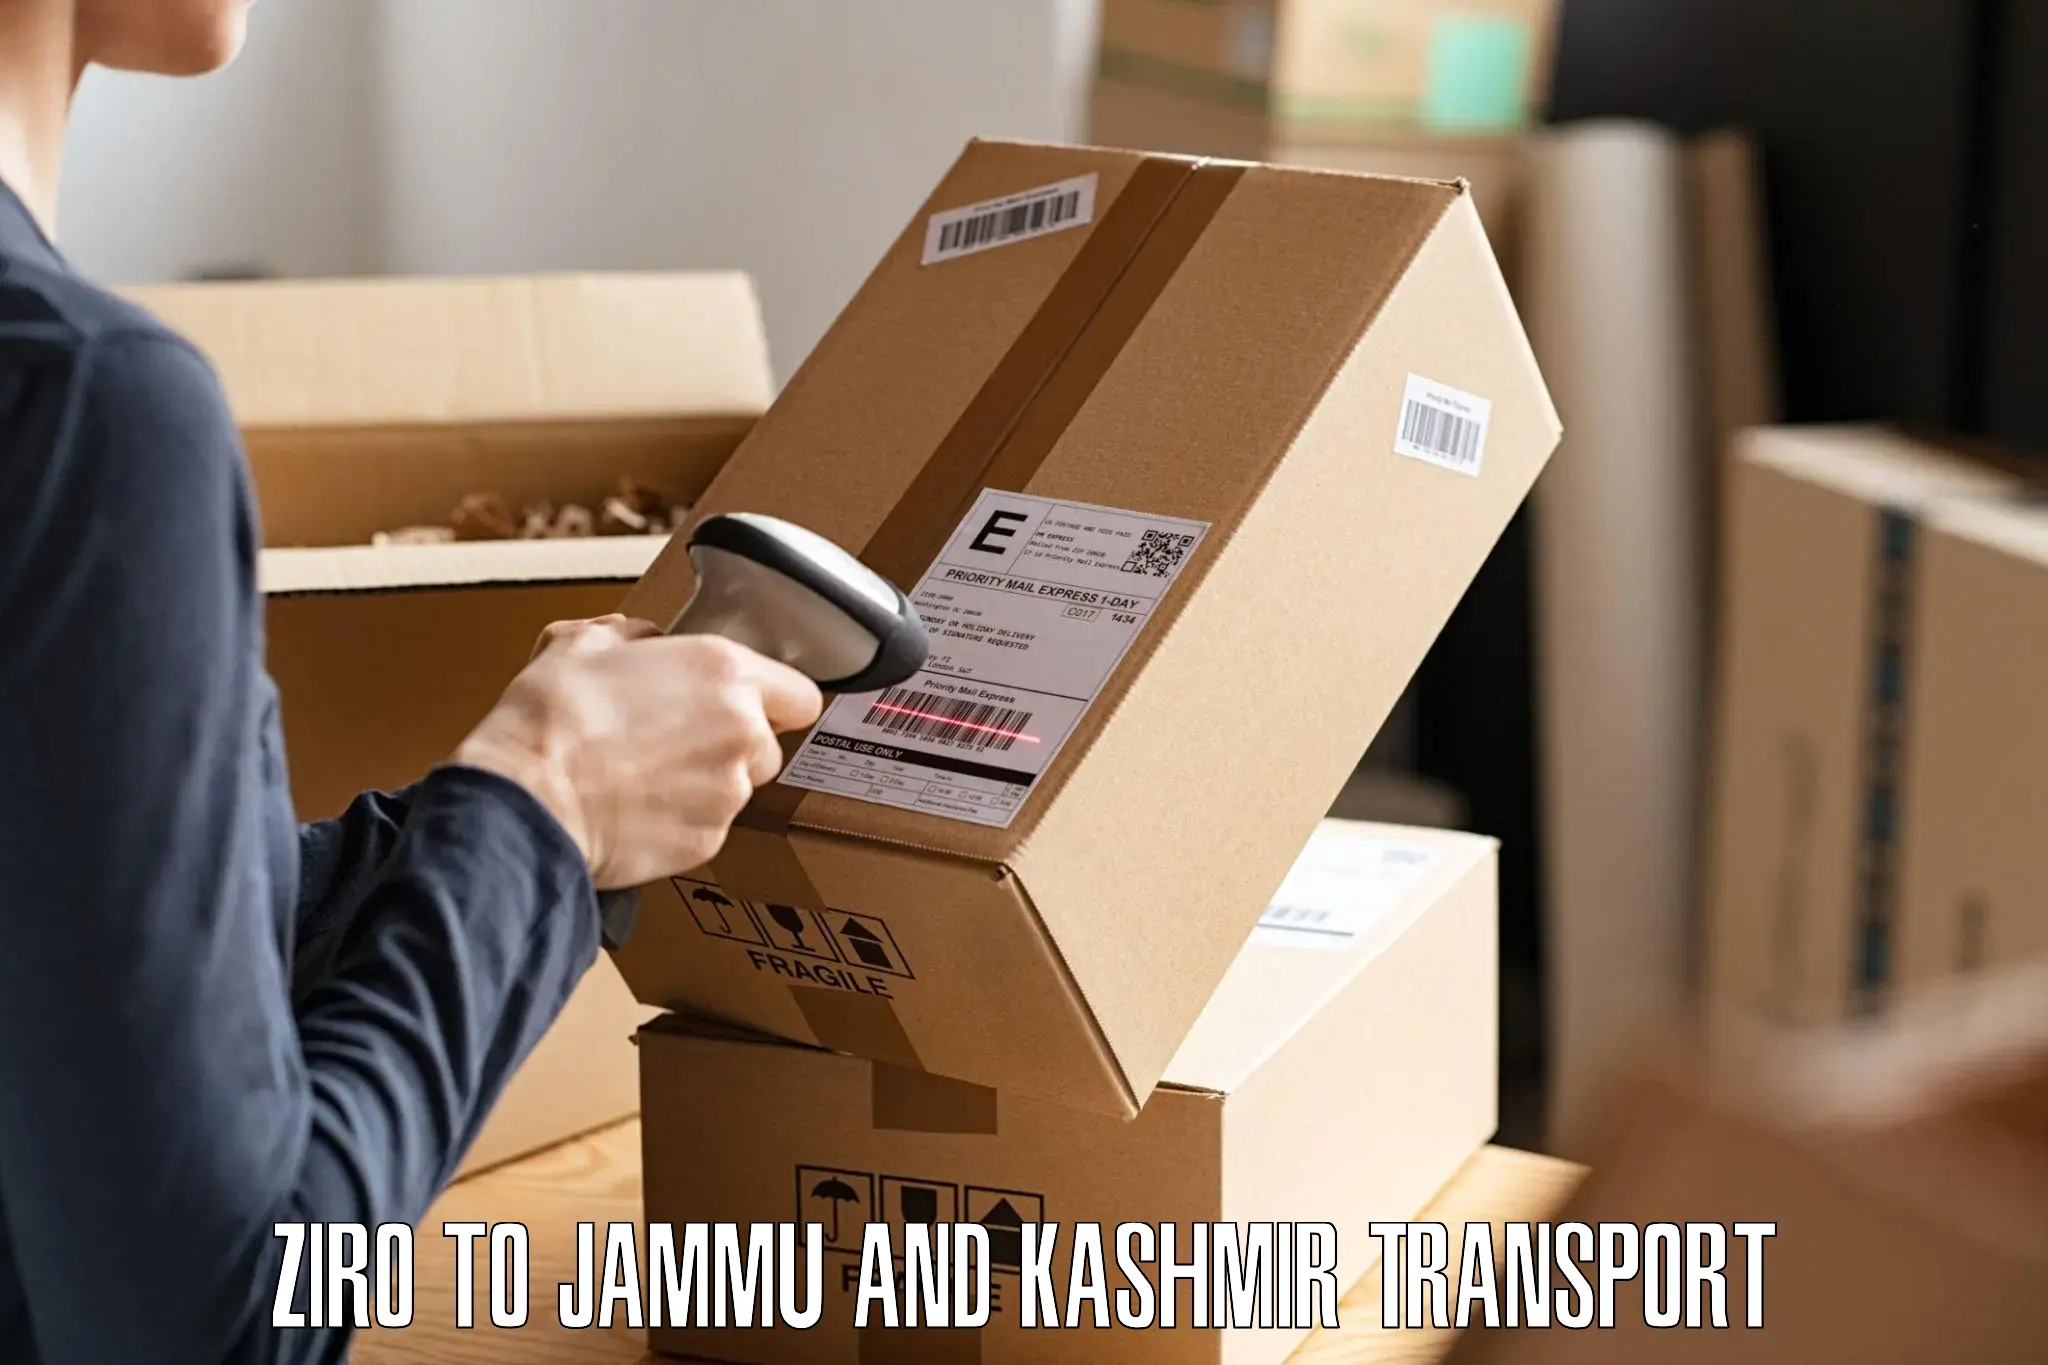 Nearest transport service Ziro to IIT Jammu